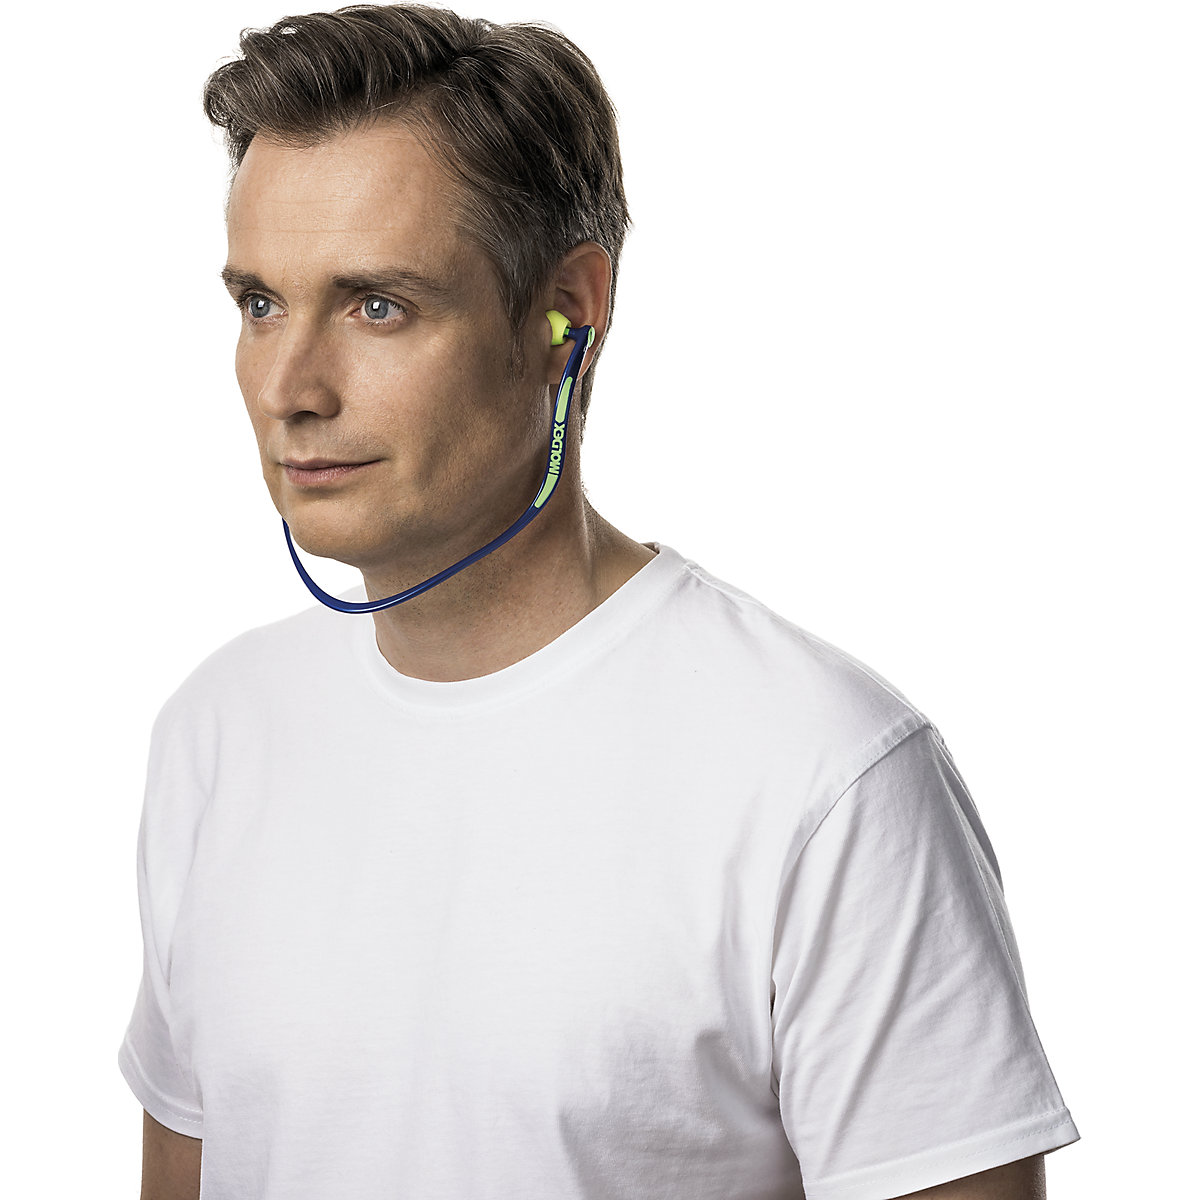 WaveBand® 2K hallásvédő fejpánt – MOLDEX (Termék képe 3)-2